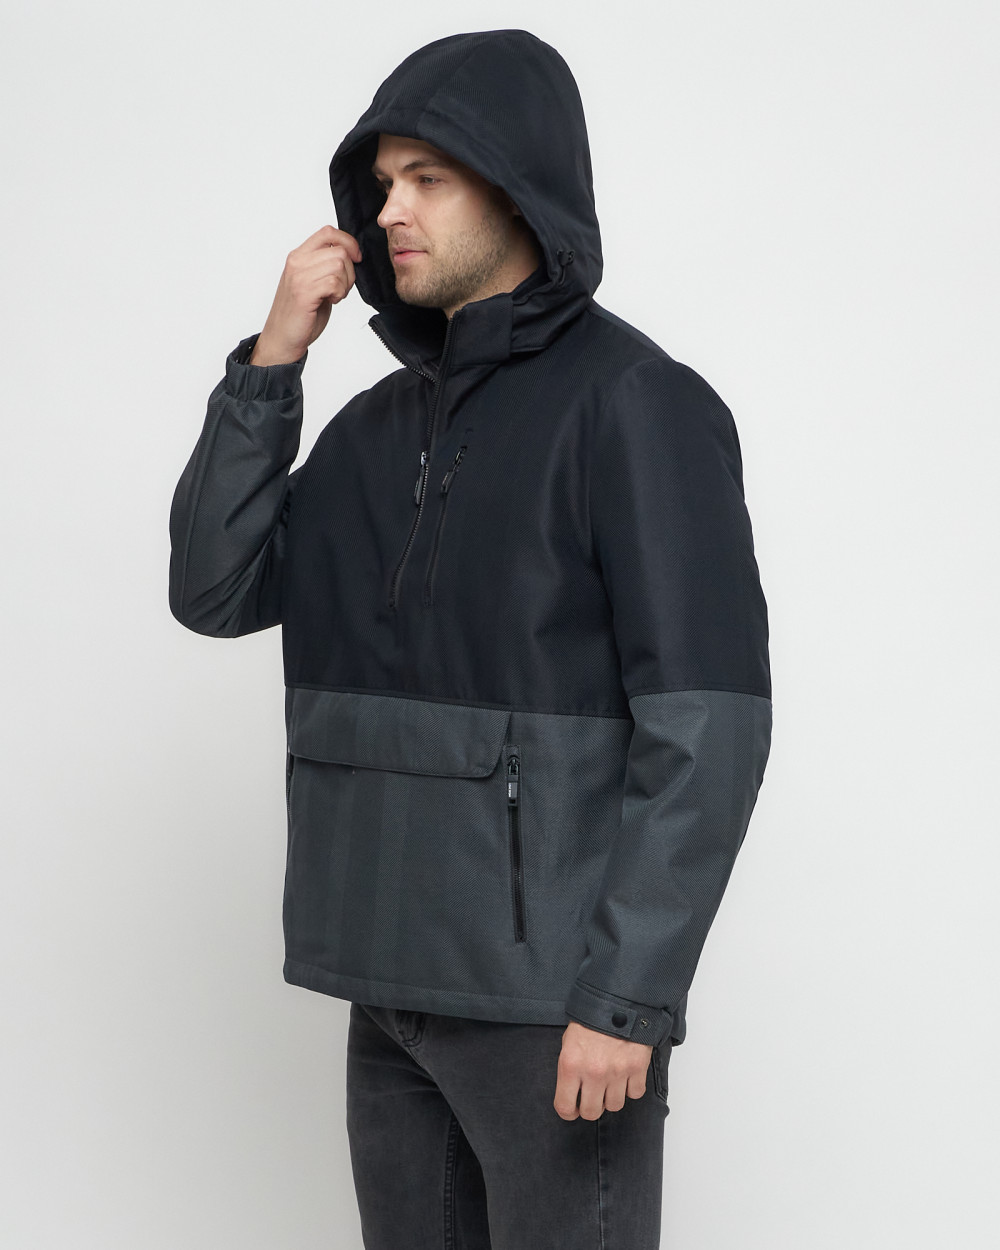 Купить куртку анорак спортивную мужскую оптом от производителя недорого в Москве 3307TS 1